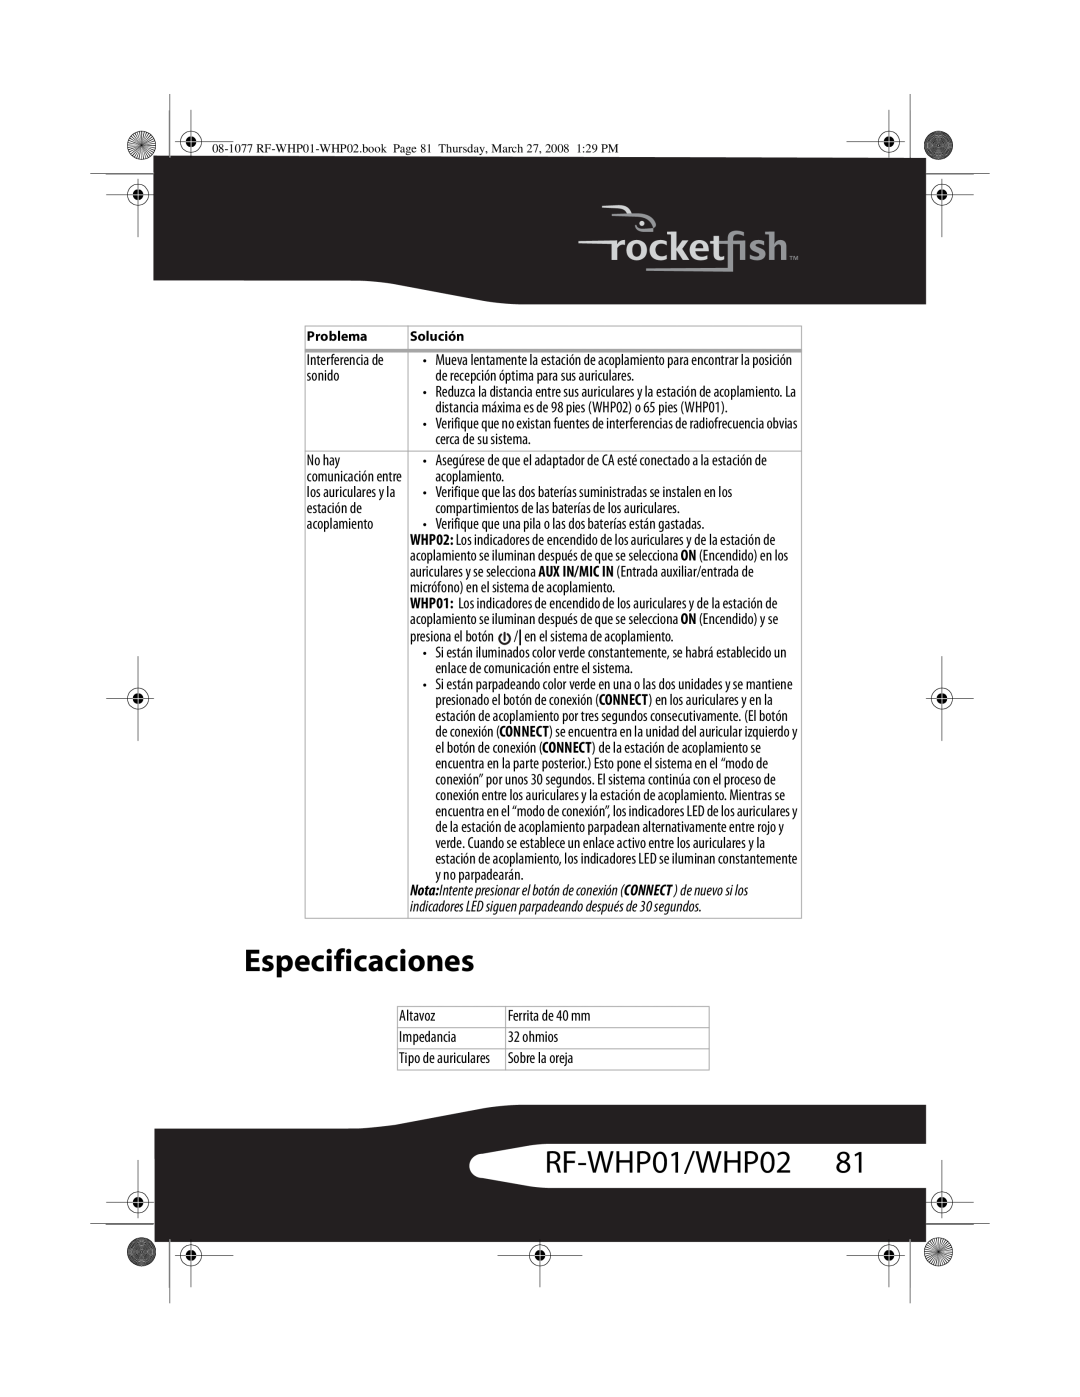 RocketFish RF-WHP02 manual Especificaciones, RF-WHP01/WHP0281 